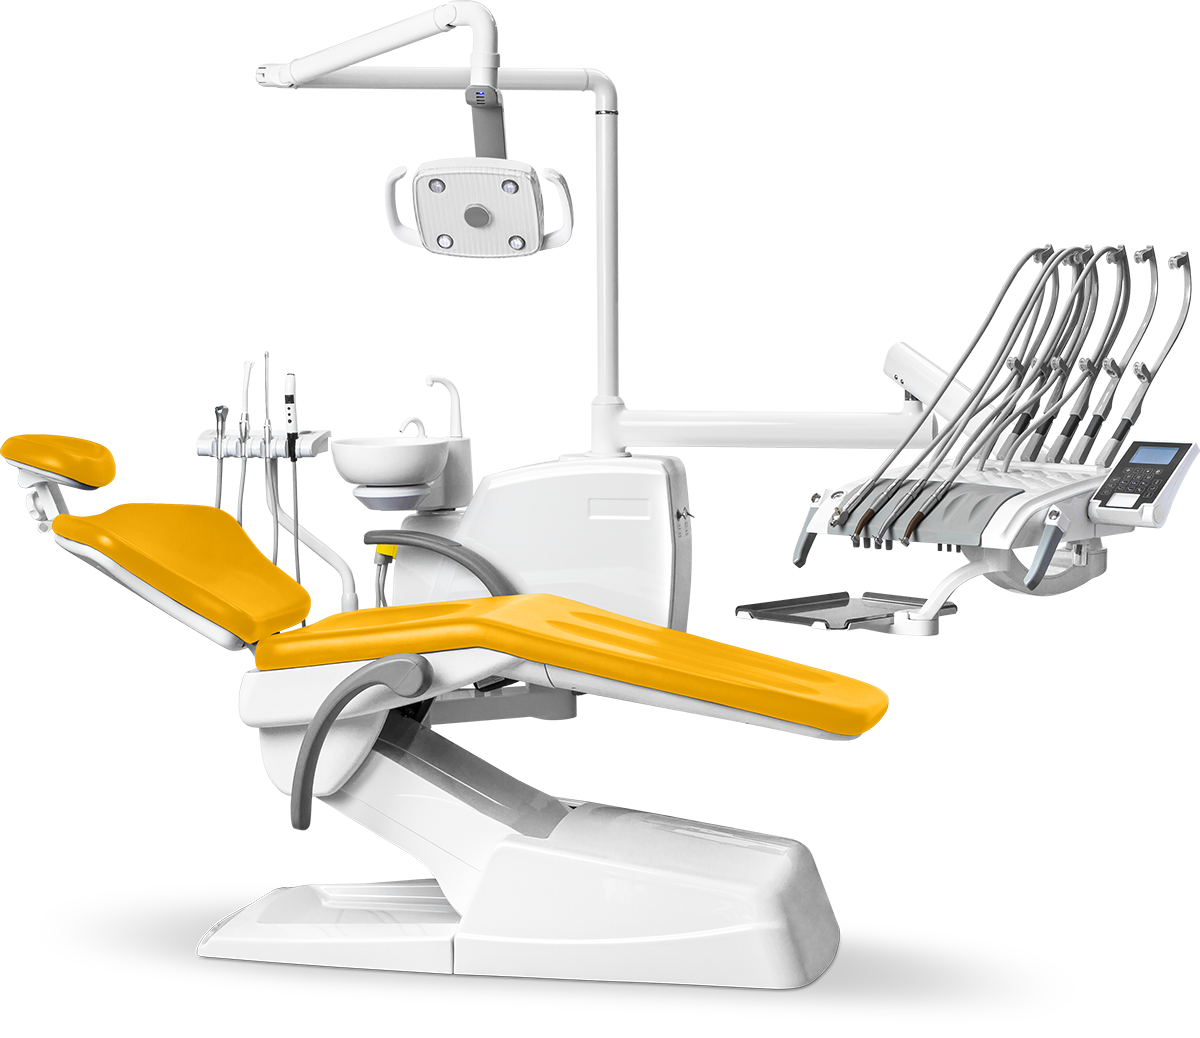 Стоматологическая установка Mercury 330 стандарт верхняя подача, Желтая